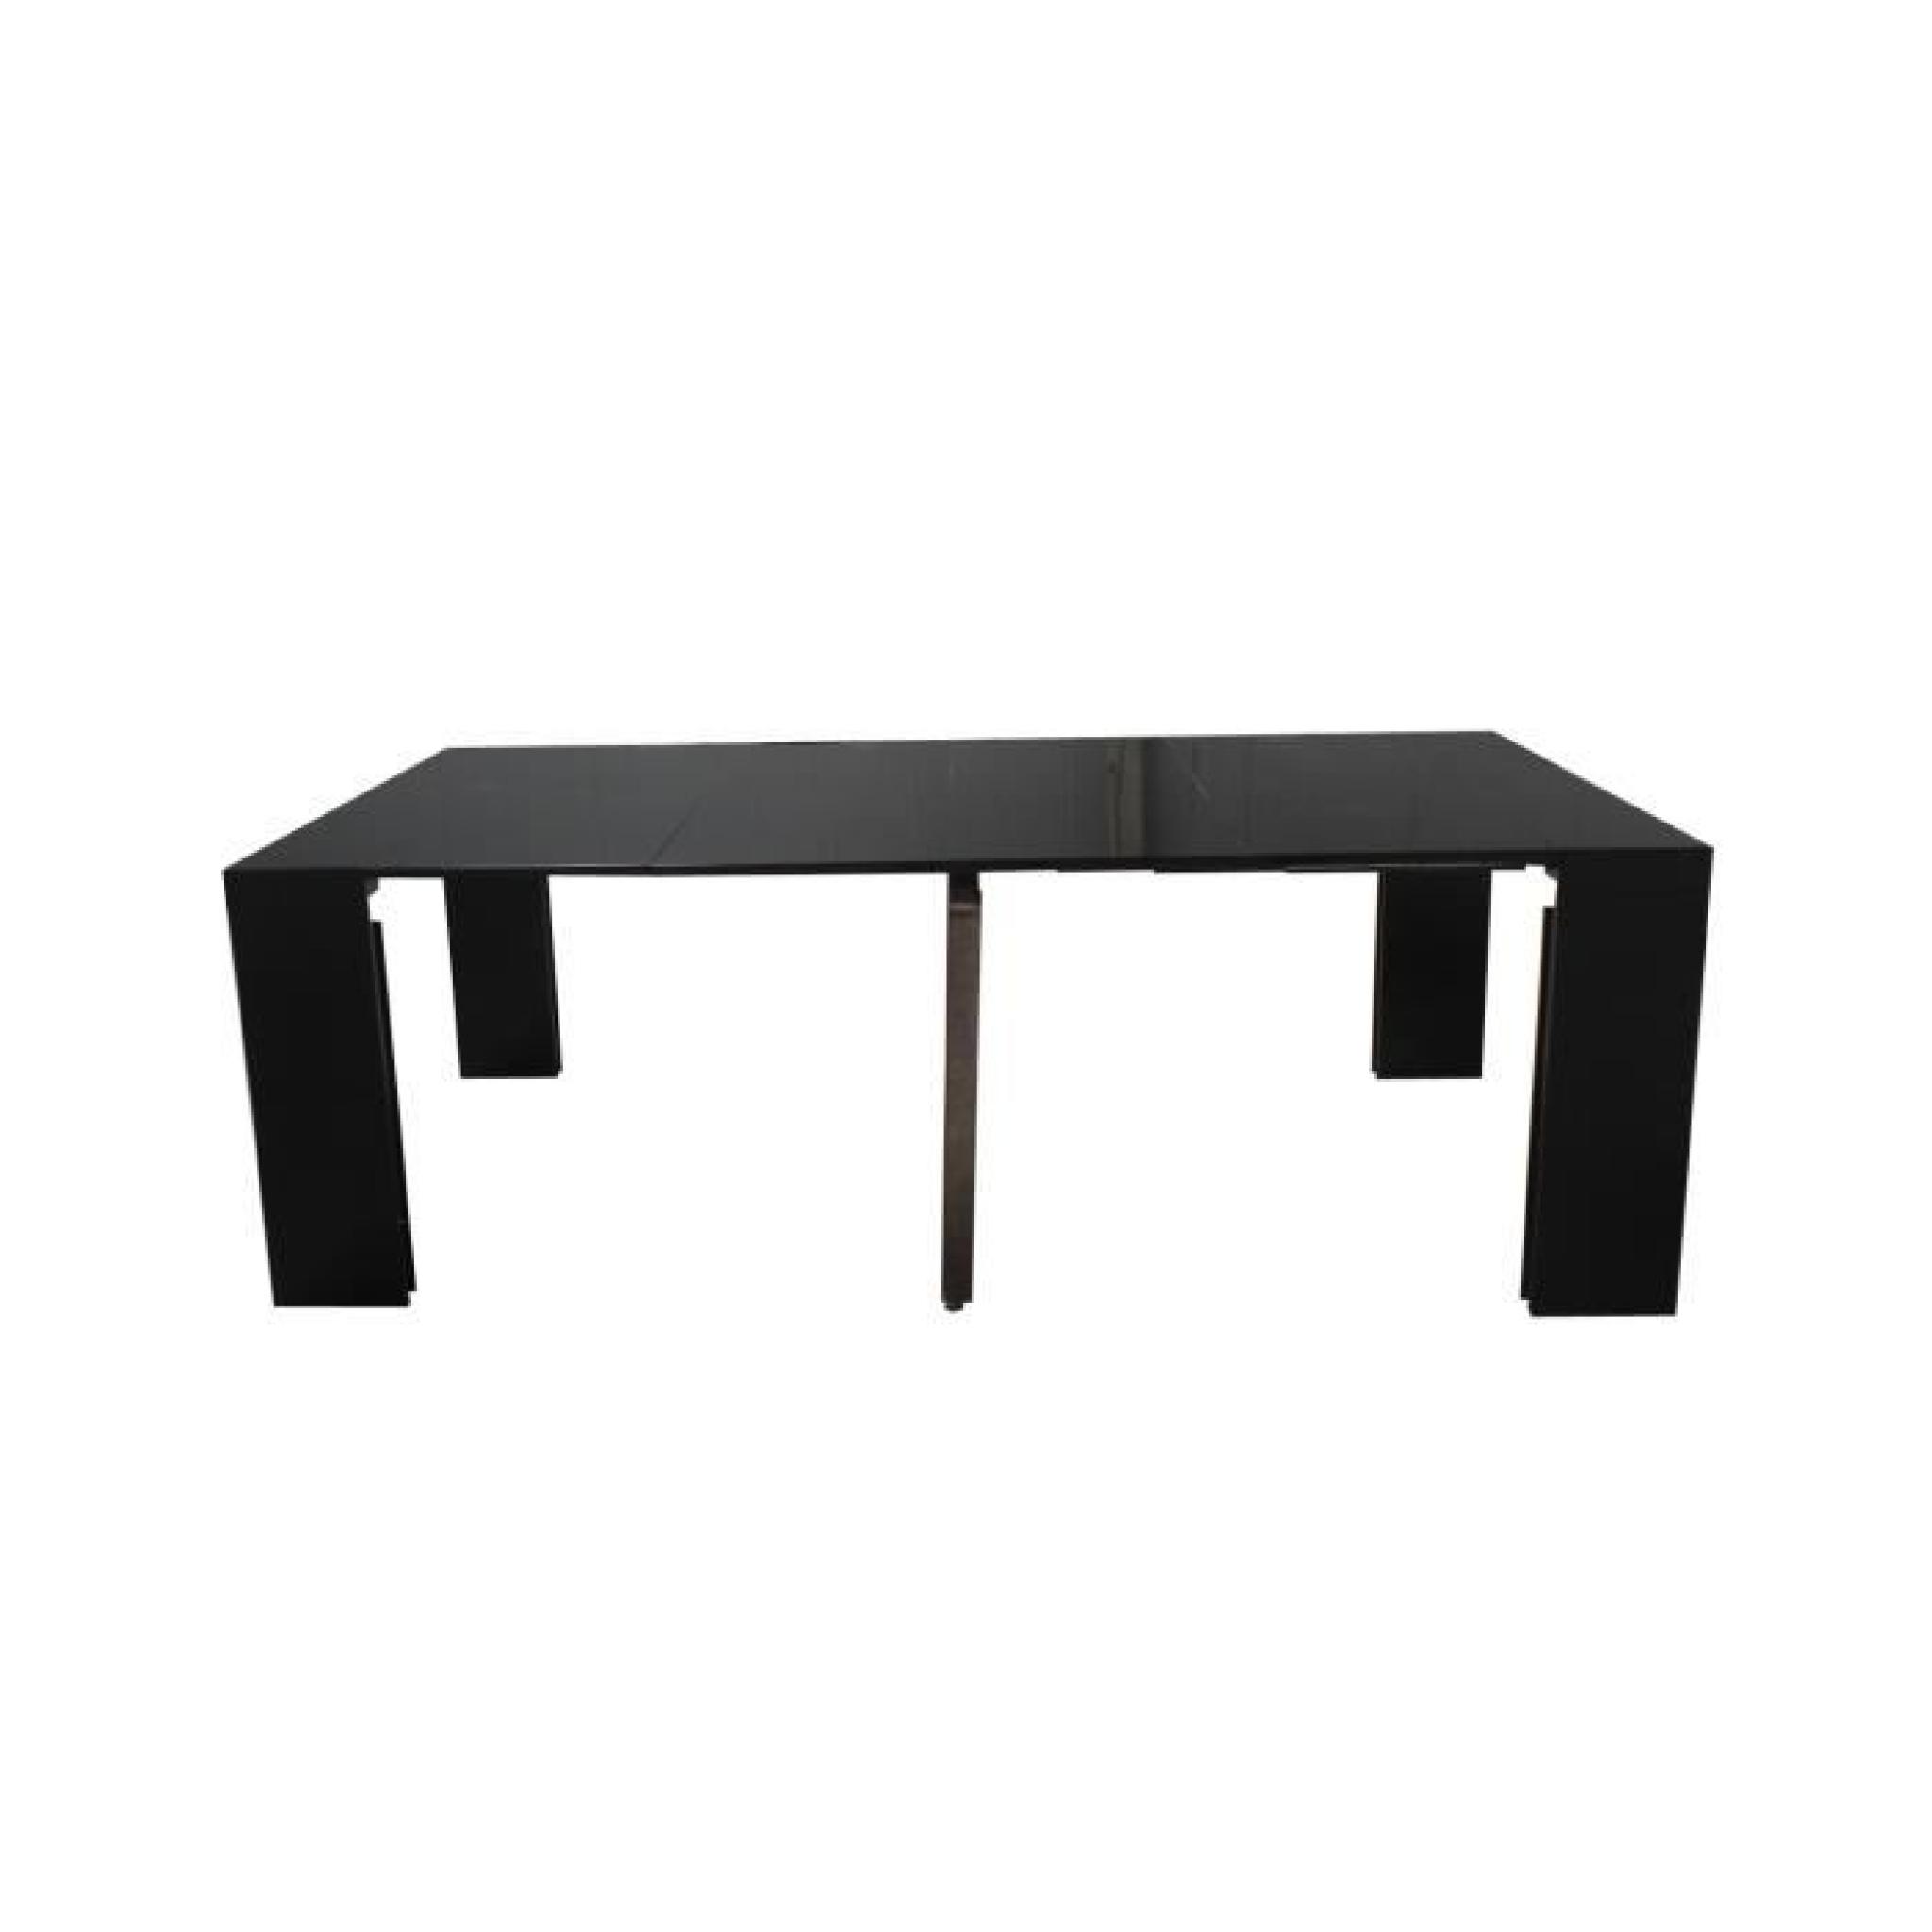 Table Console Extensible Othello 4 allonges Laqué Gris -2m35-